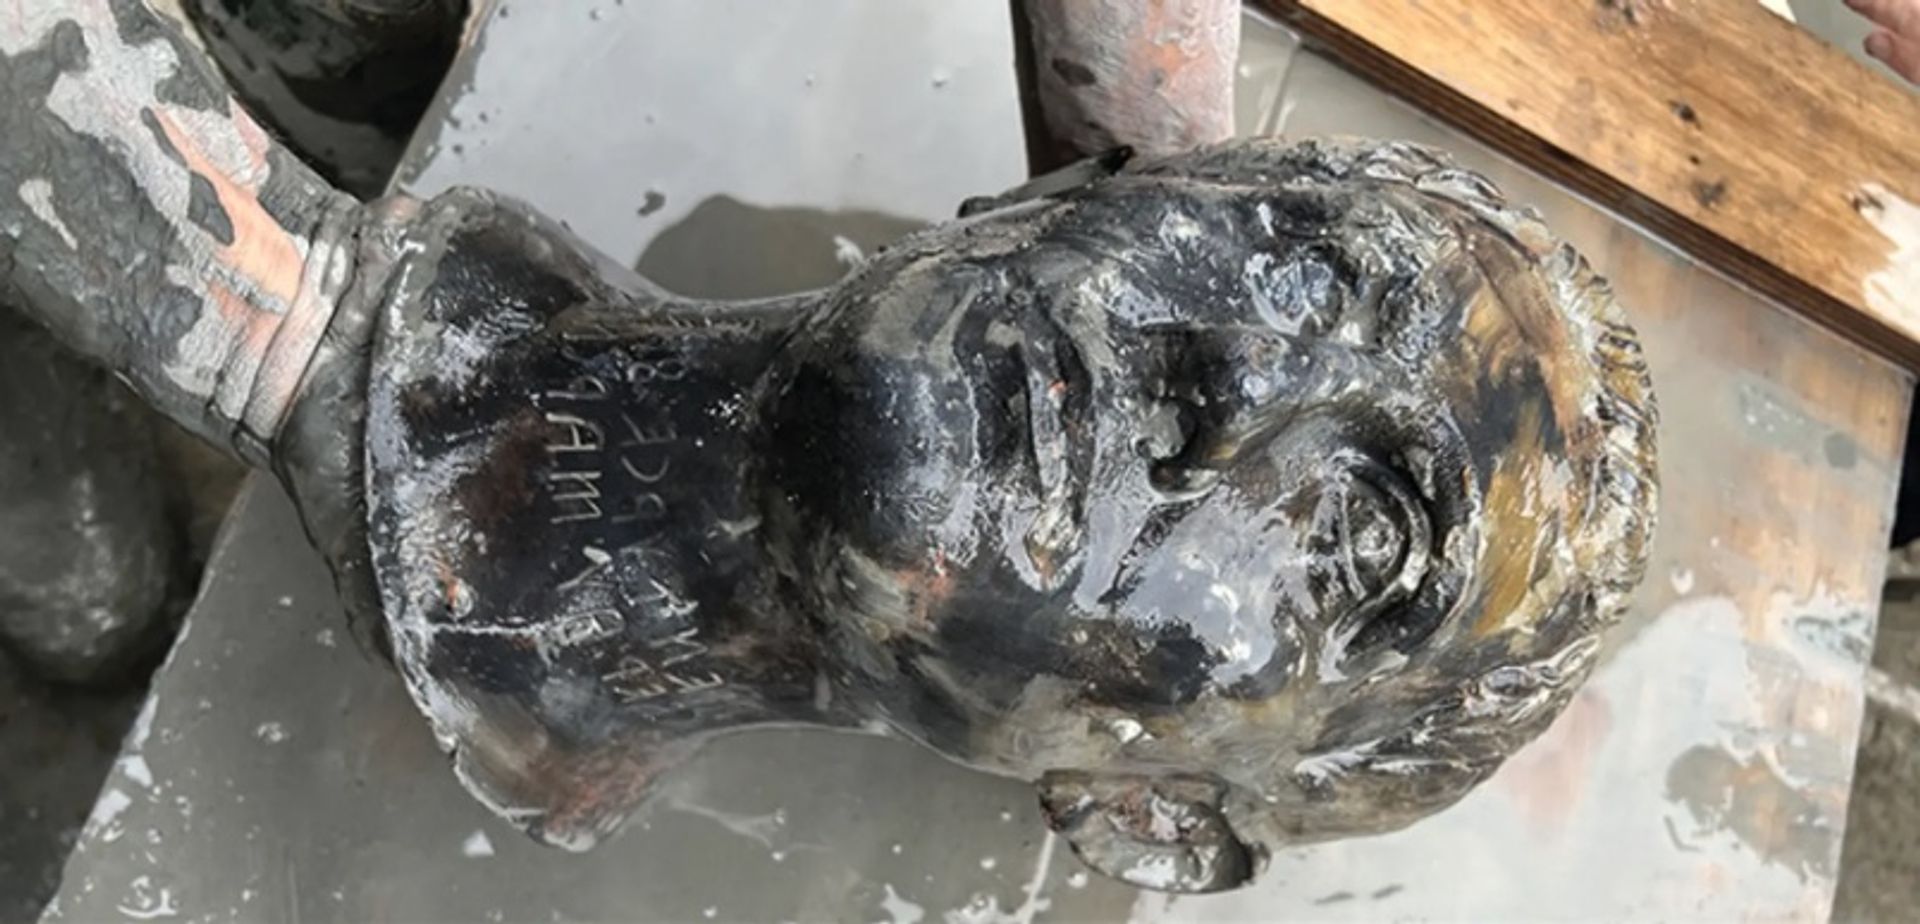 ראש, אחד מכמה פסלים של אברי גוף שנמצאו החפירה

באדיבות משרד התרבות האיטלקי